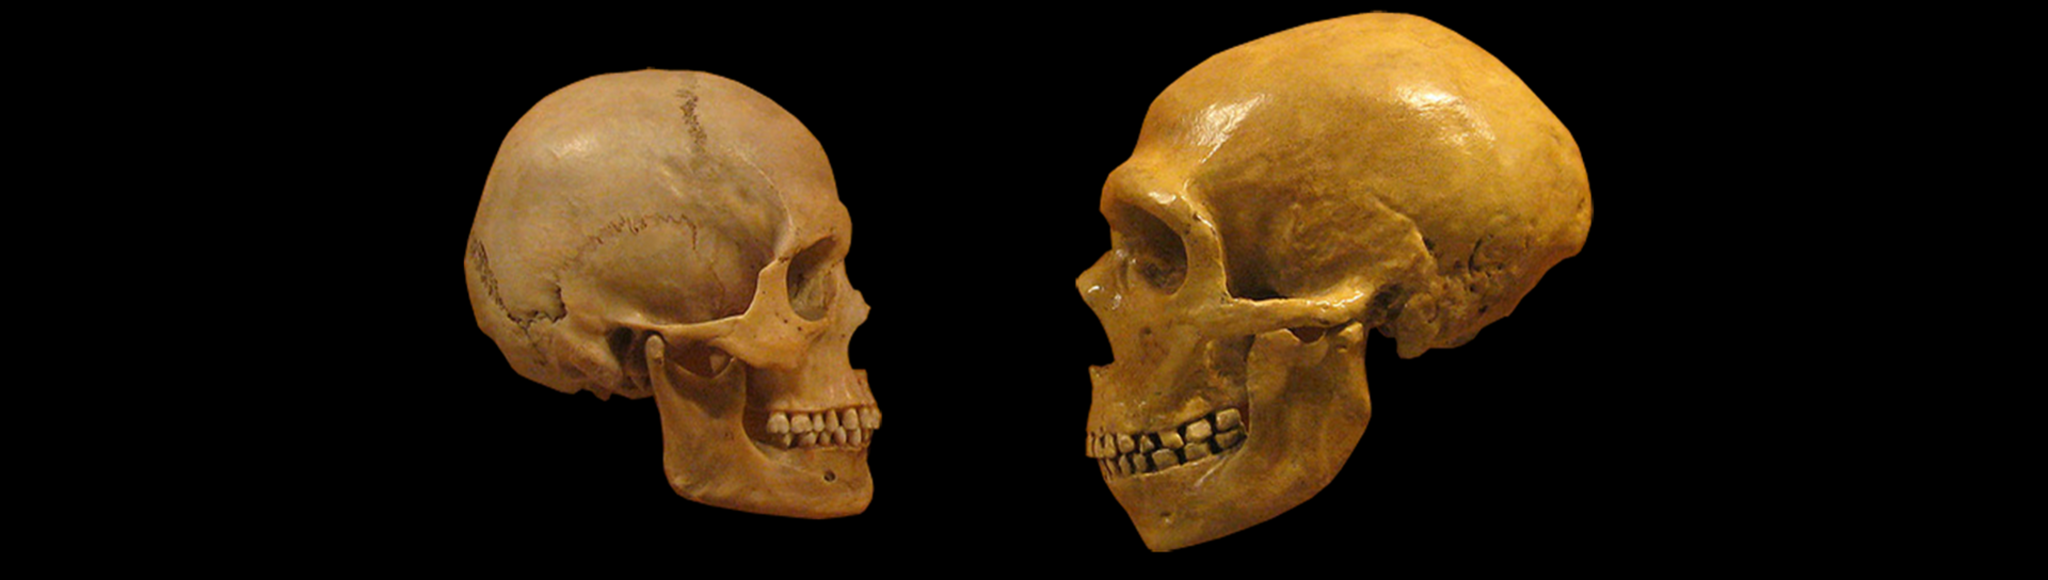 Schädel von Homo sapiens und Homo neandertalensis